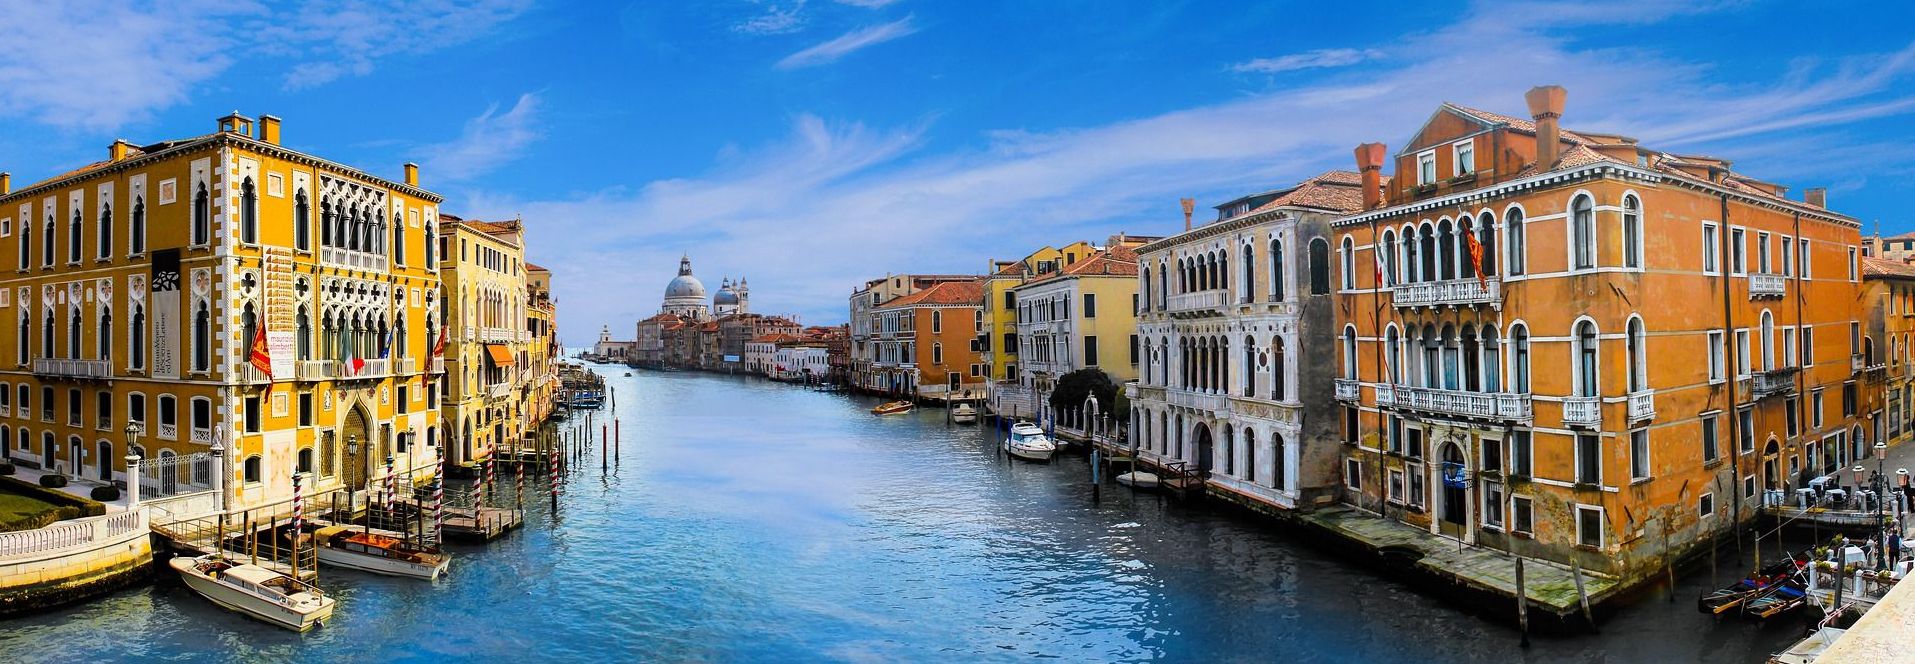 ונציה מככבת ברשימה בכל המדינות שנסקרו